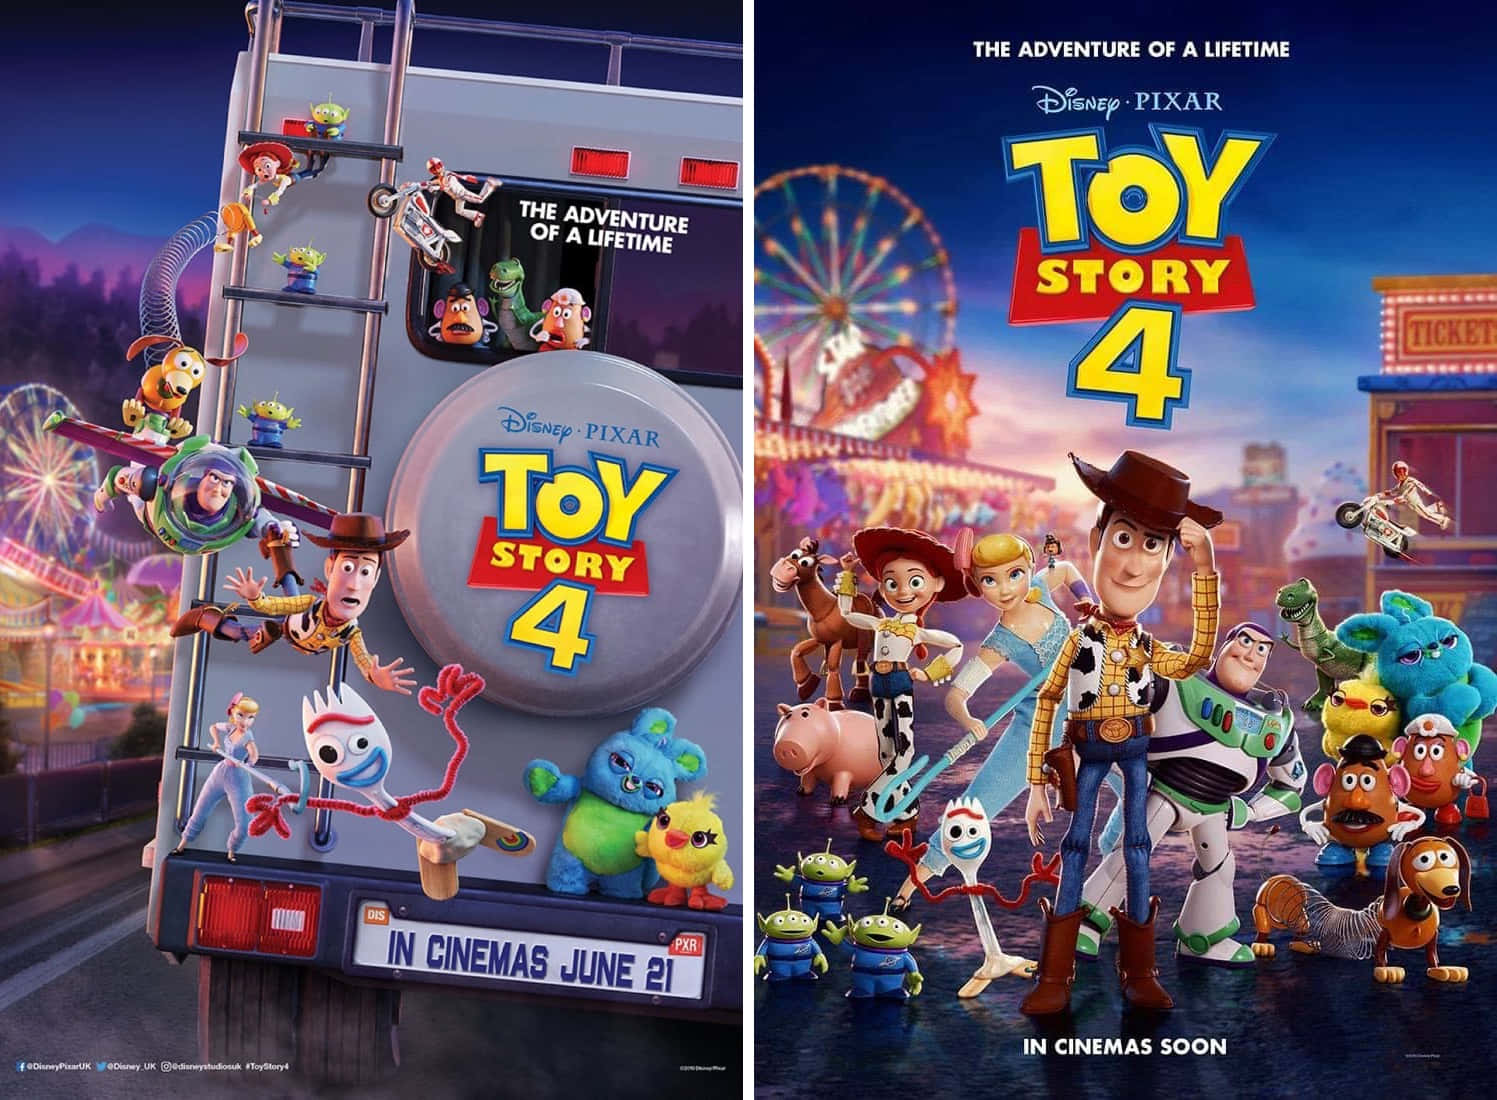 Preparatia Unirti Alla Nuova Avventura Di Toy Story 4!